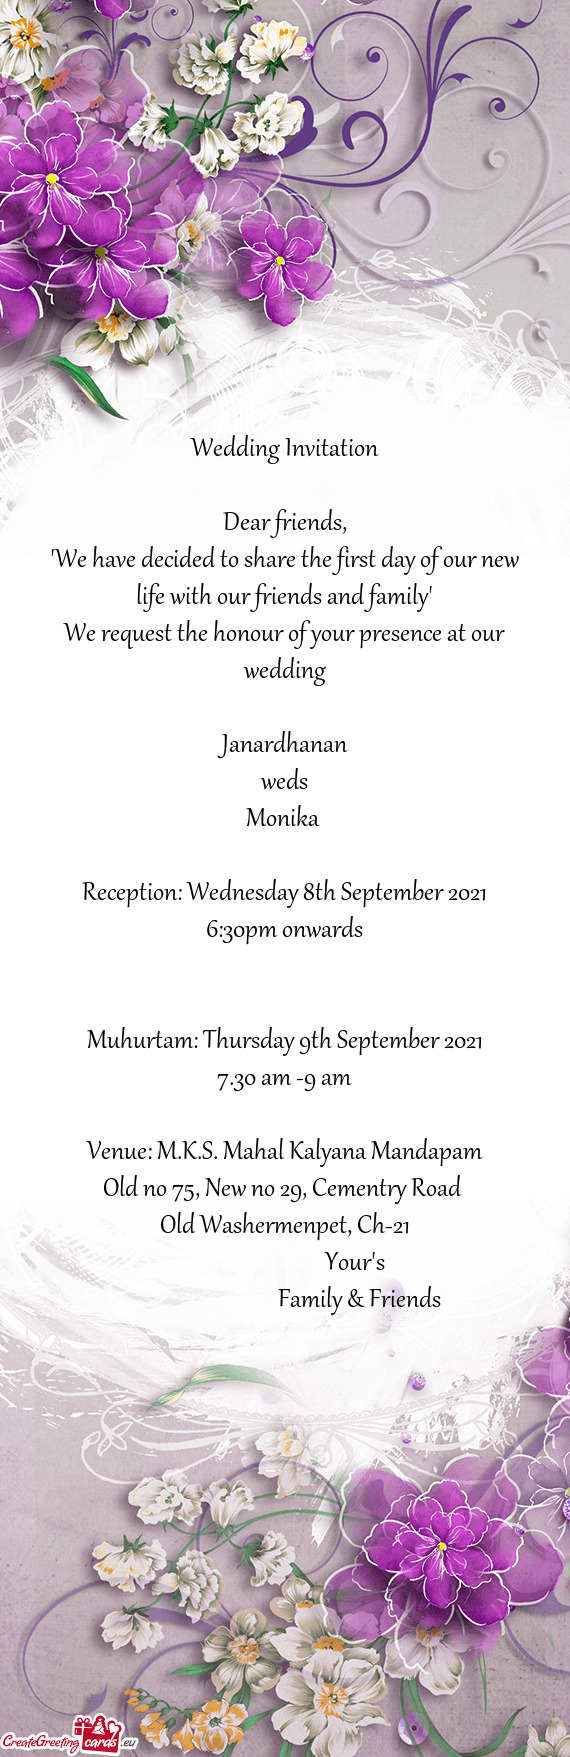 Venue: M.K.S. Mahal Kalyana Mandapam